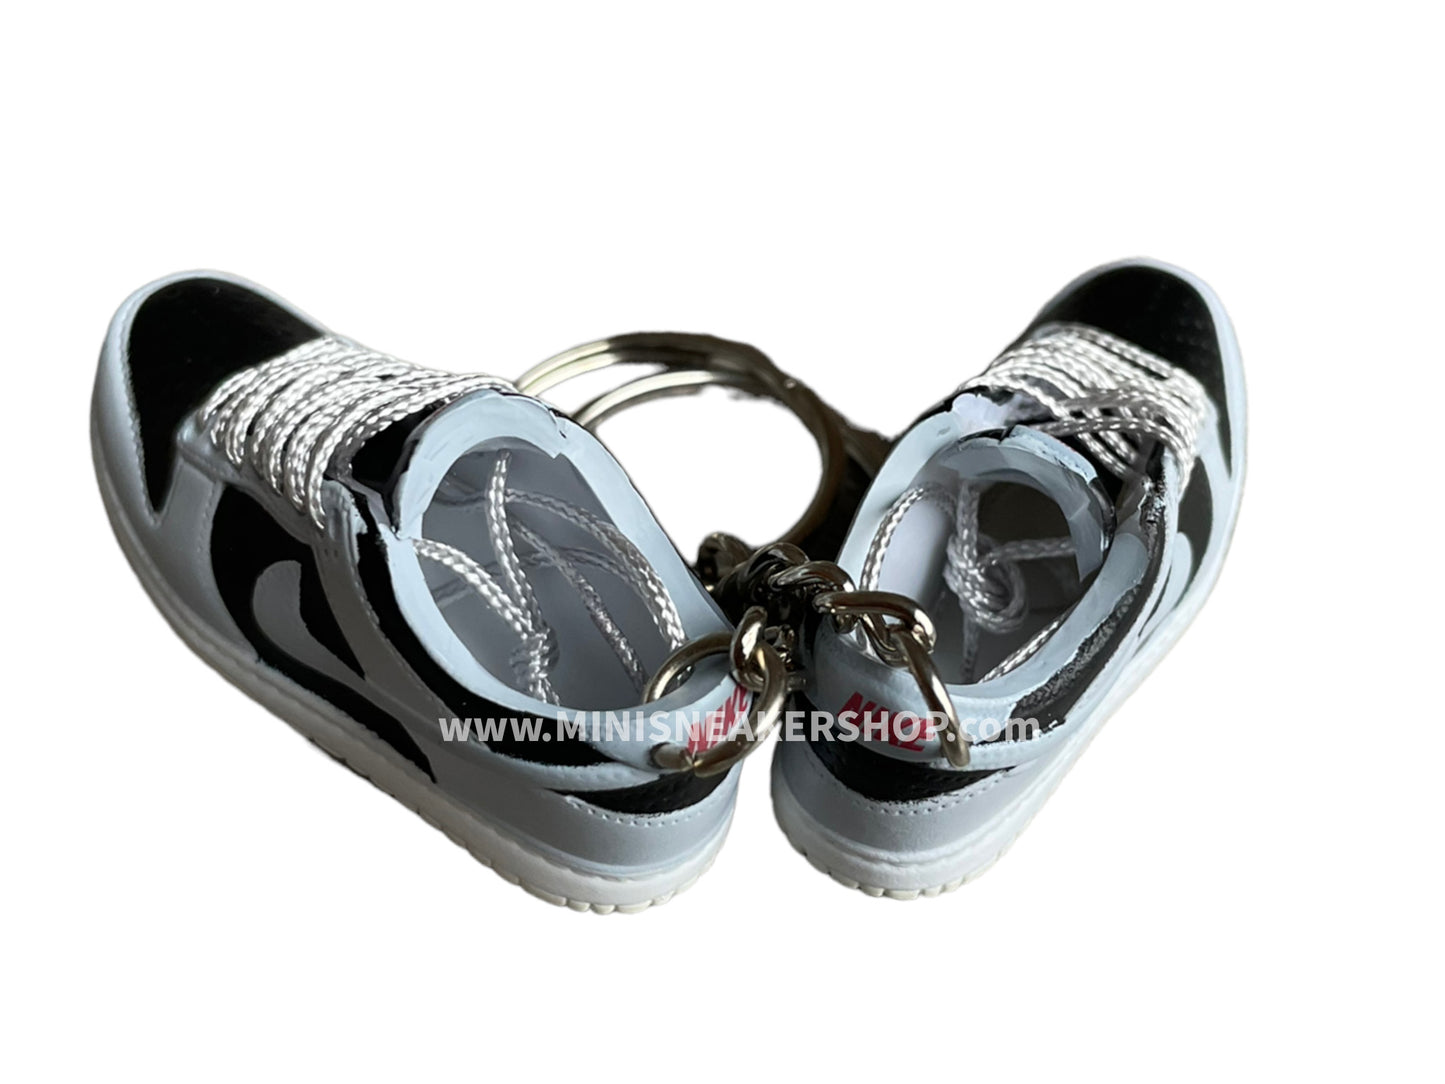 Mini sneaker keychain 3D Dunk - Grey Black